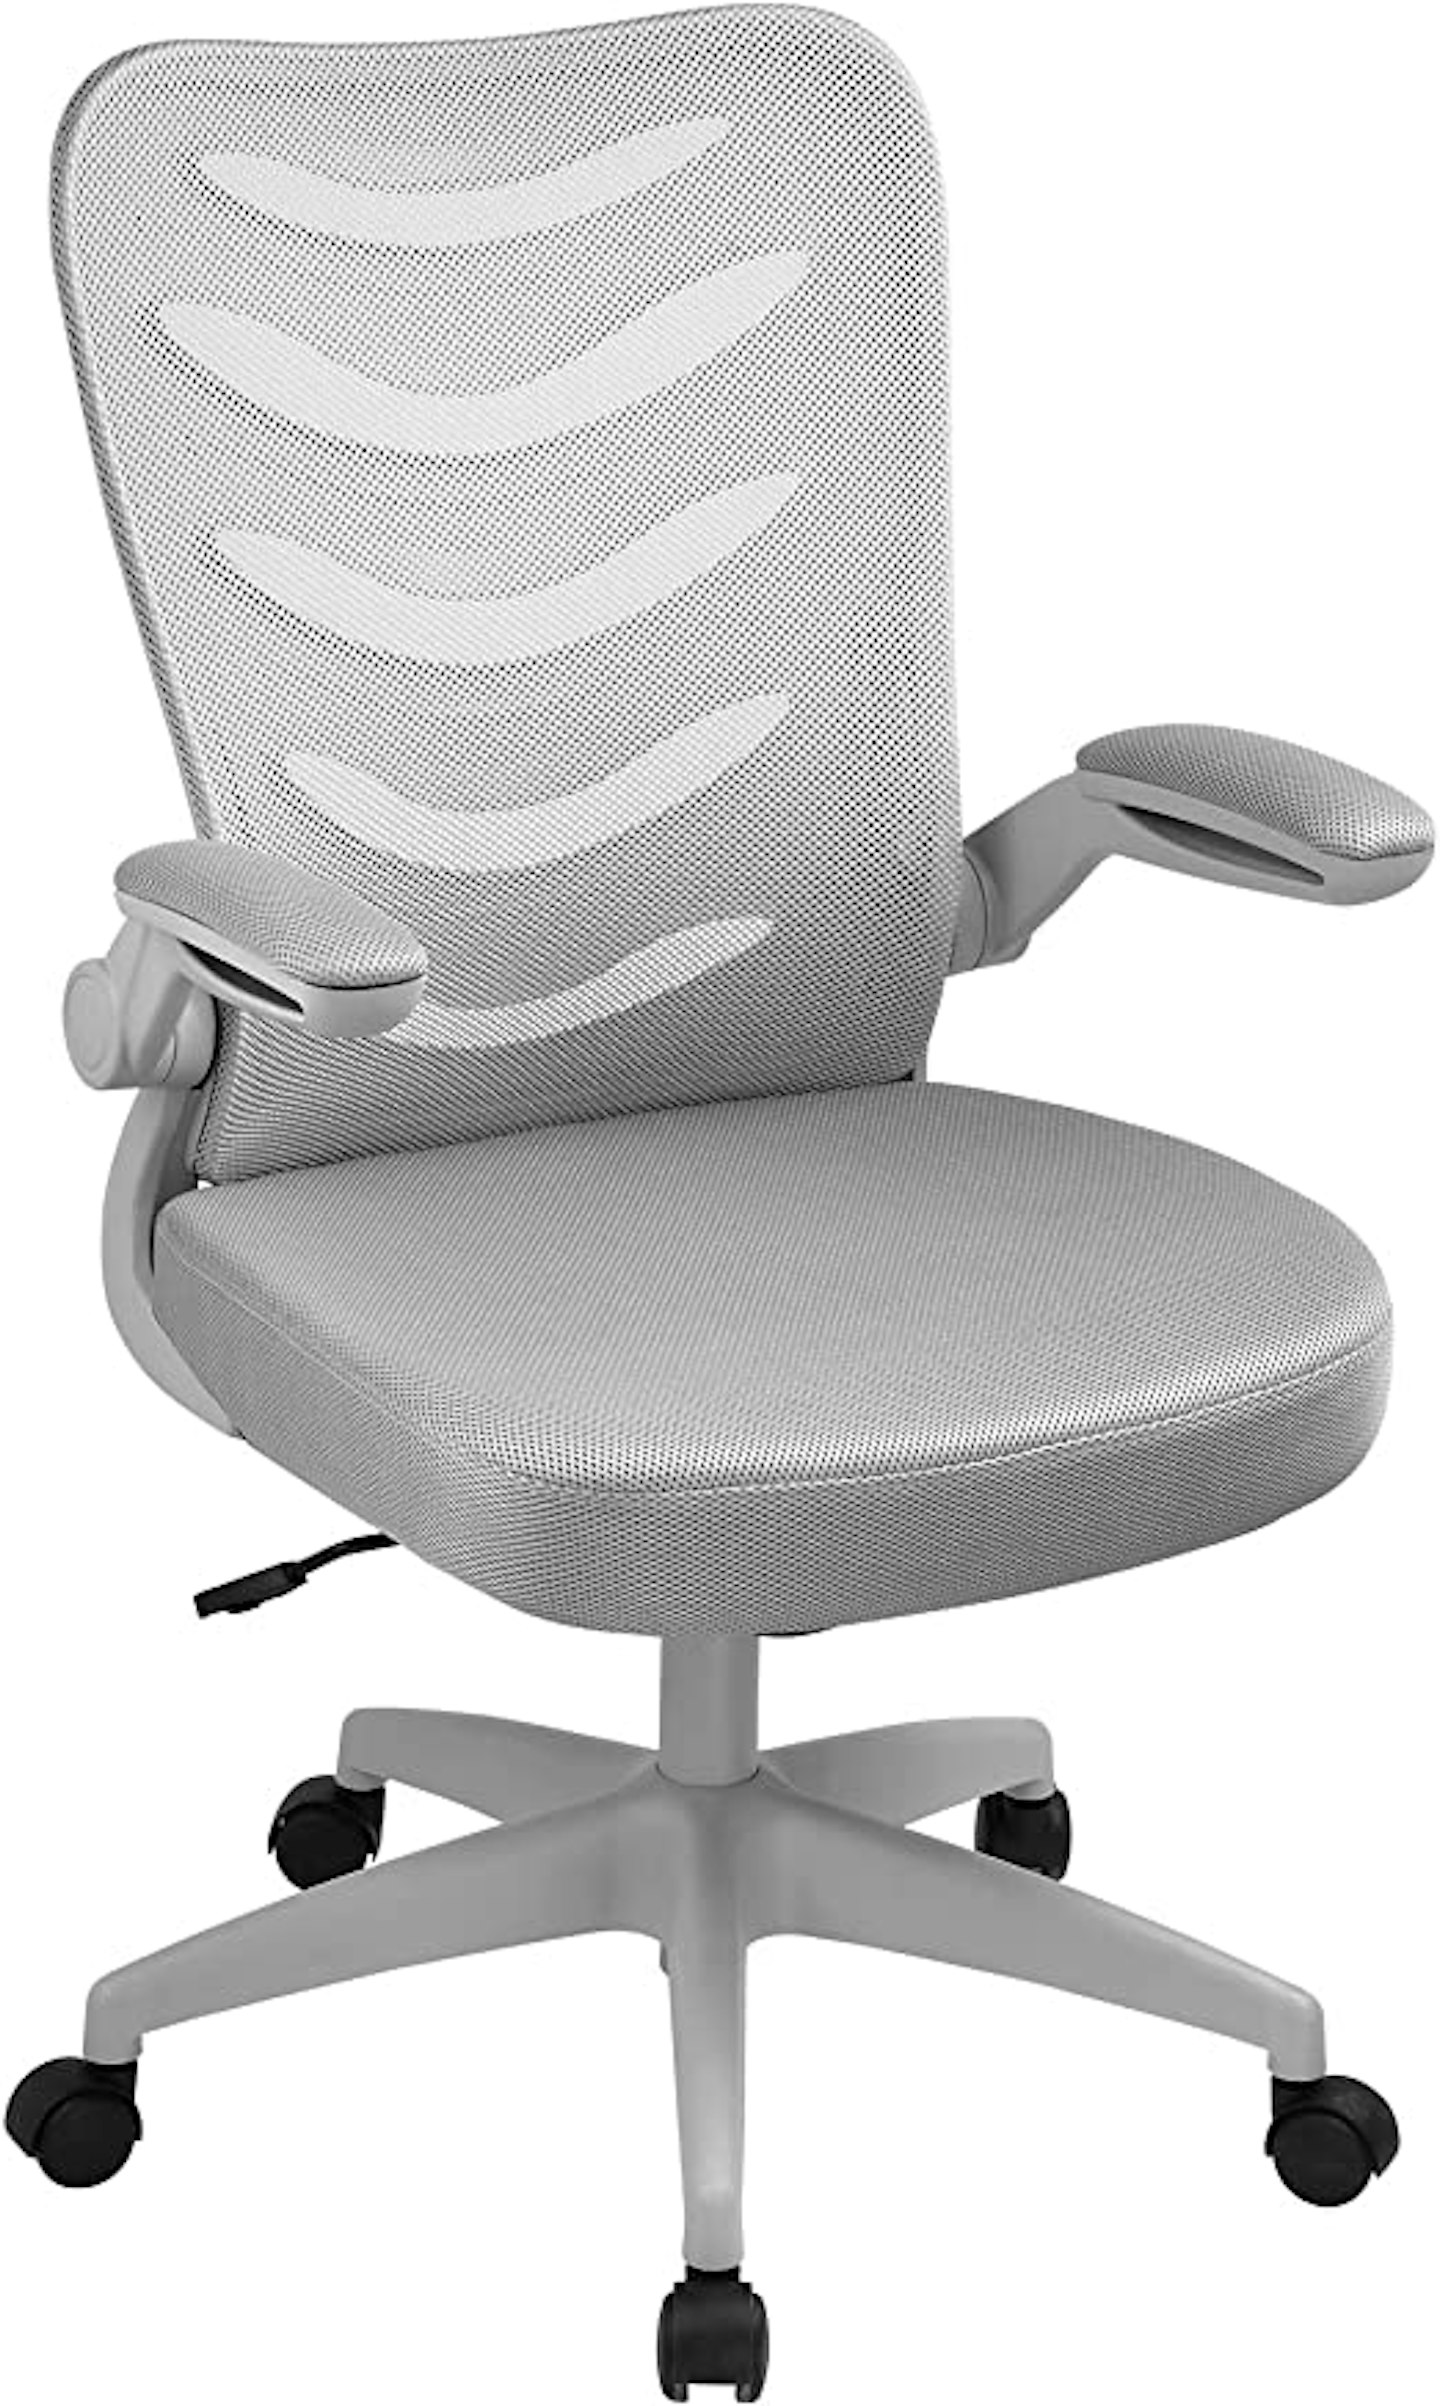 COMHOMA Desk Chair